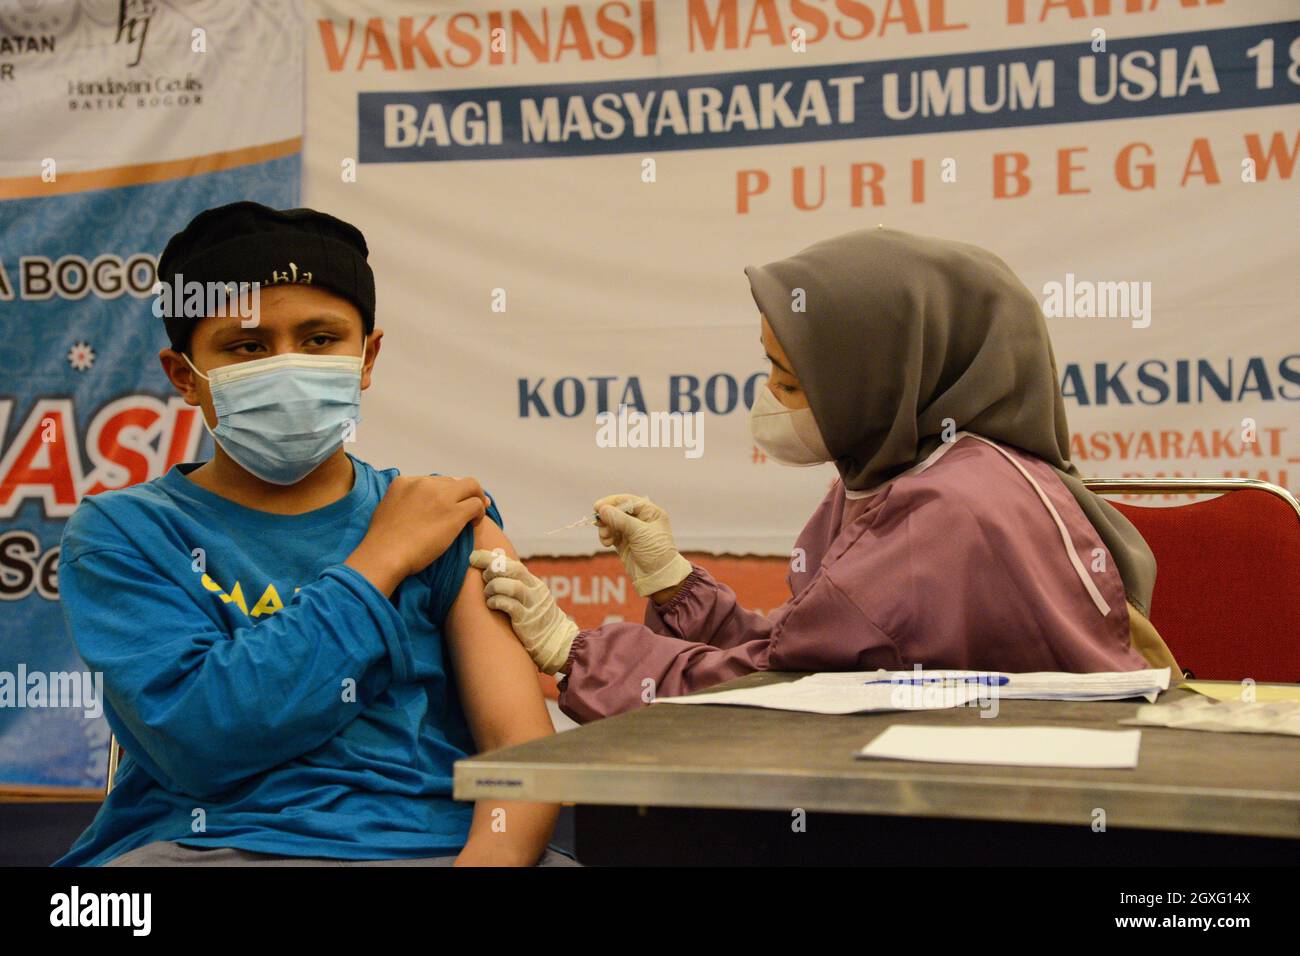 Un niño recibió la vacuna COVID-19 de Pfizer-BioNTech (Comirnaty) durante la vacunación masiva en Bogor, West Java, Indonesia, el 5 de octubre de 2021. La vacunación de Indonesia ocupa el quinto lugar en el mundo por el número de inyecciones. (Foto de Adriana/INA Photo Agency/Sipa USA) Foto de stock